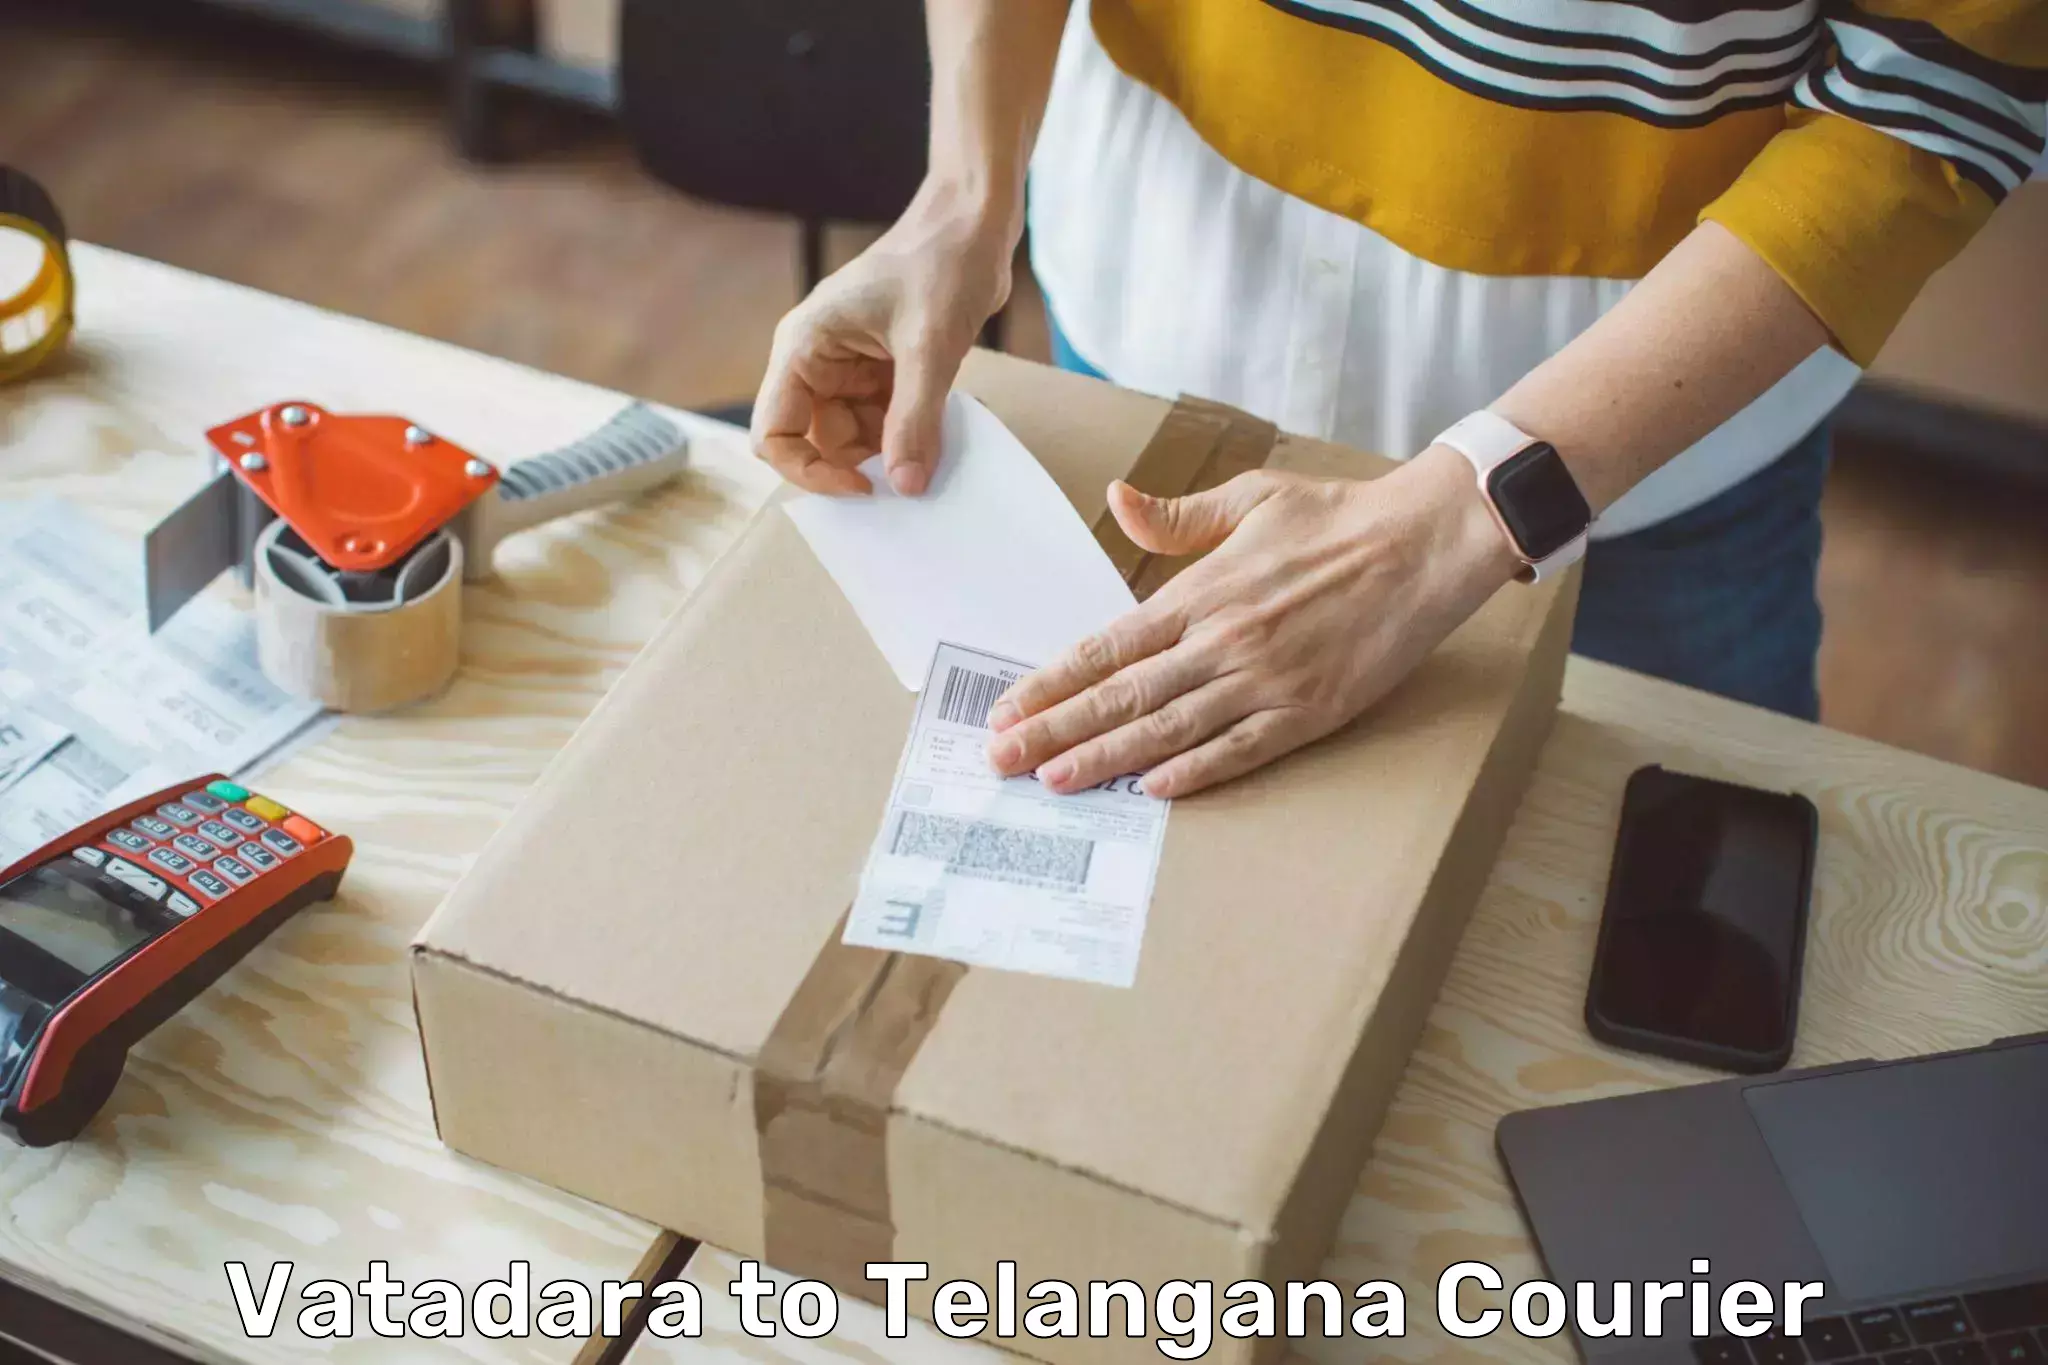 Advanced courier platforms Vatadara to Telangana